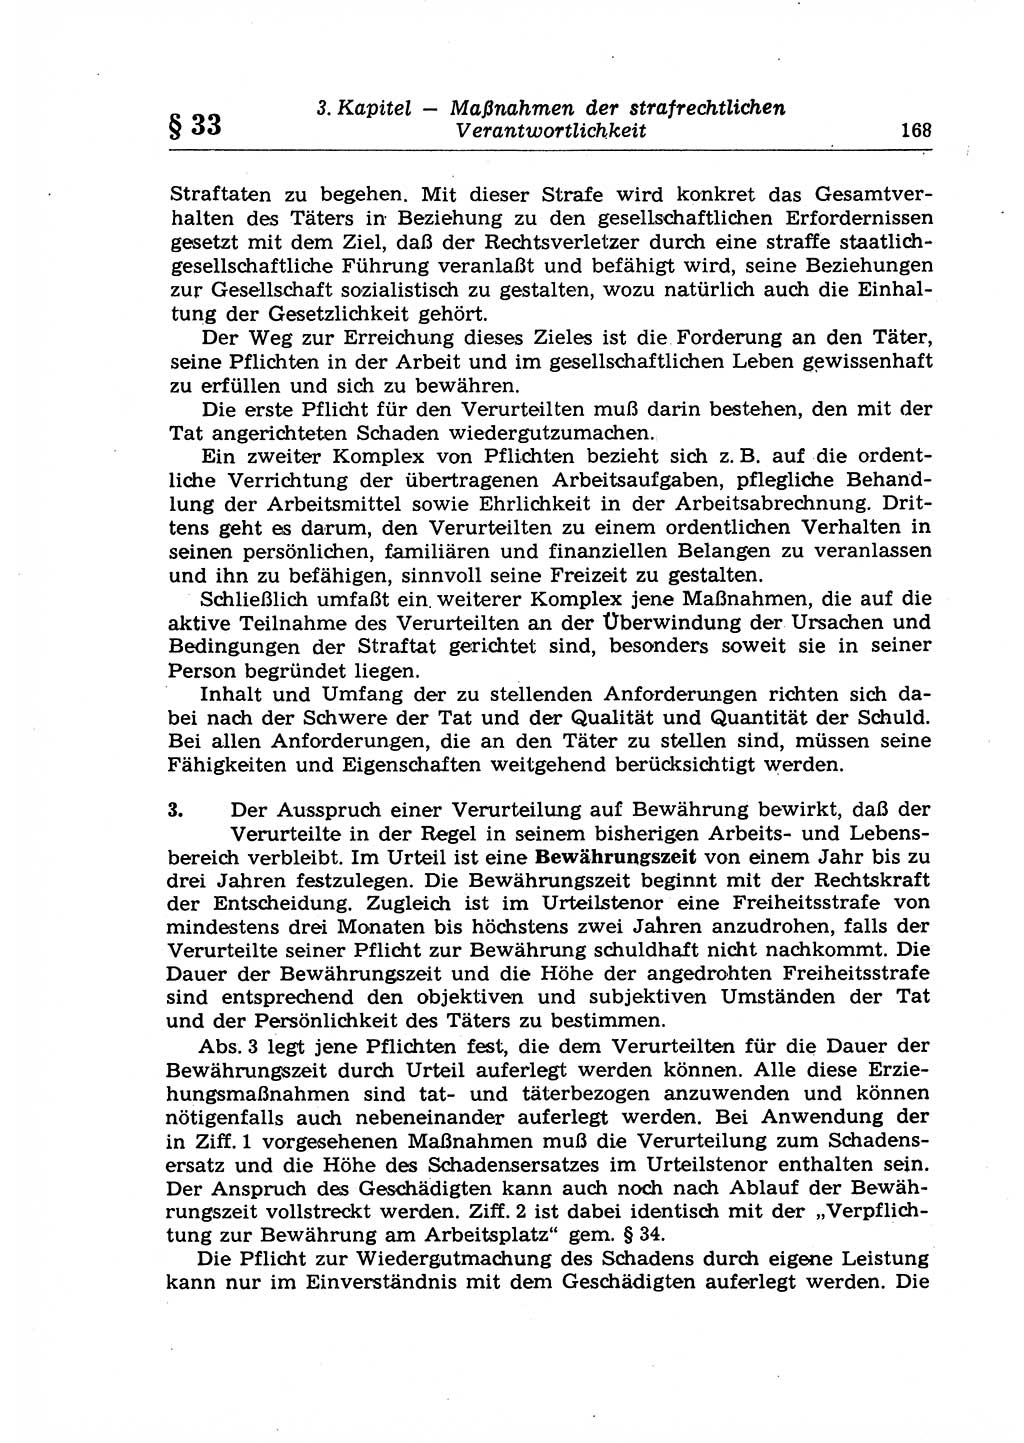 Strafrecht der Deutschen Demokratischen Republik (DDR), Lehrkommentar zum Strafgesetzbuch (StGB), Allgemeiner Teil 1969, Seite 168 (Strafr. DDR Lehrkomm. StGB AT 1969, S. 168)